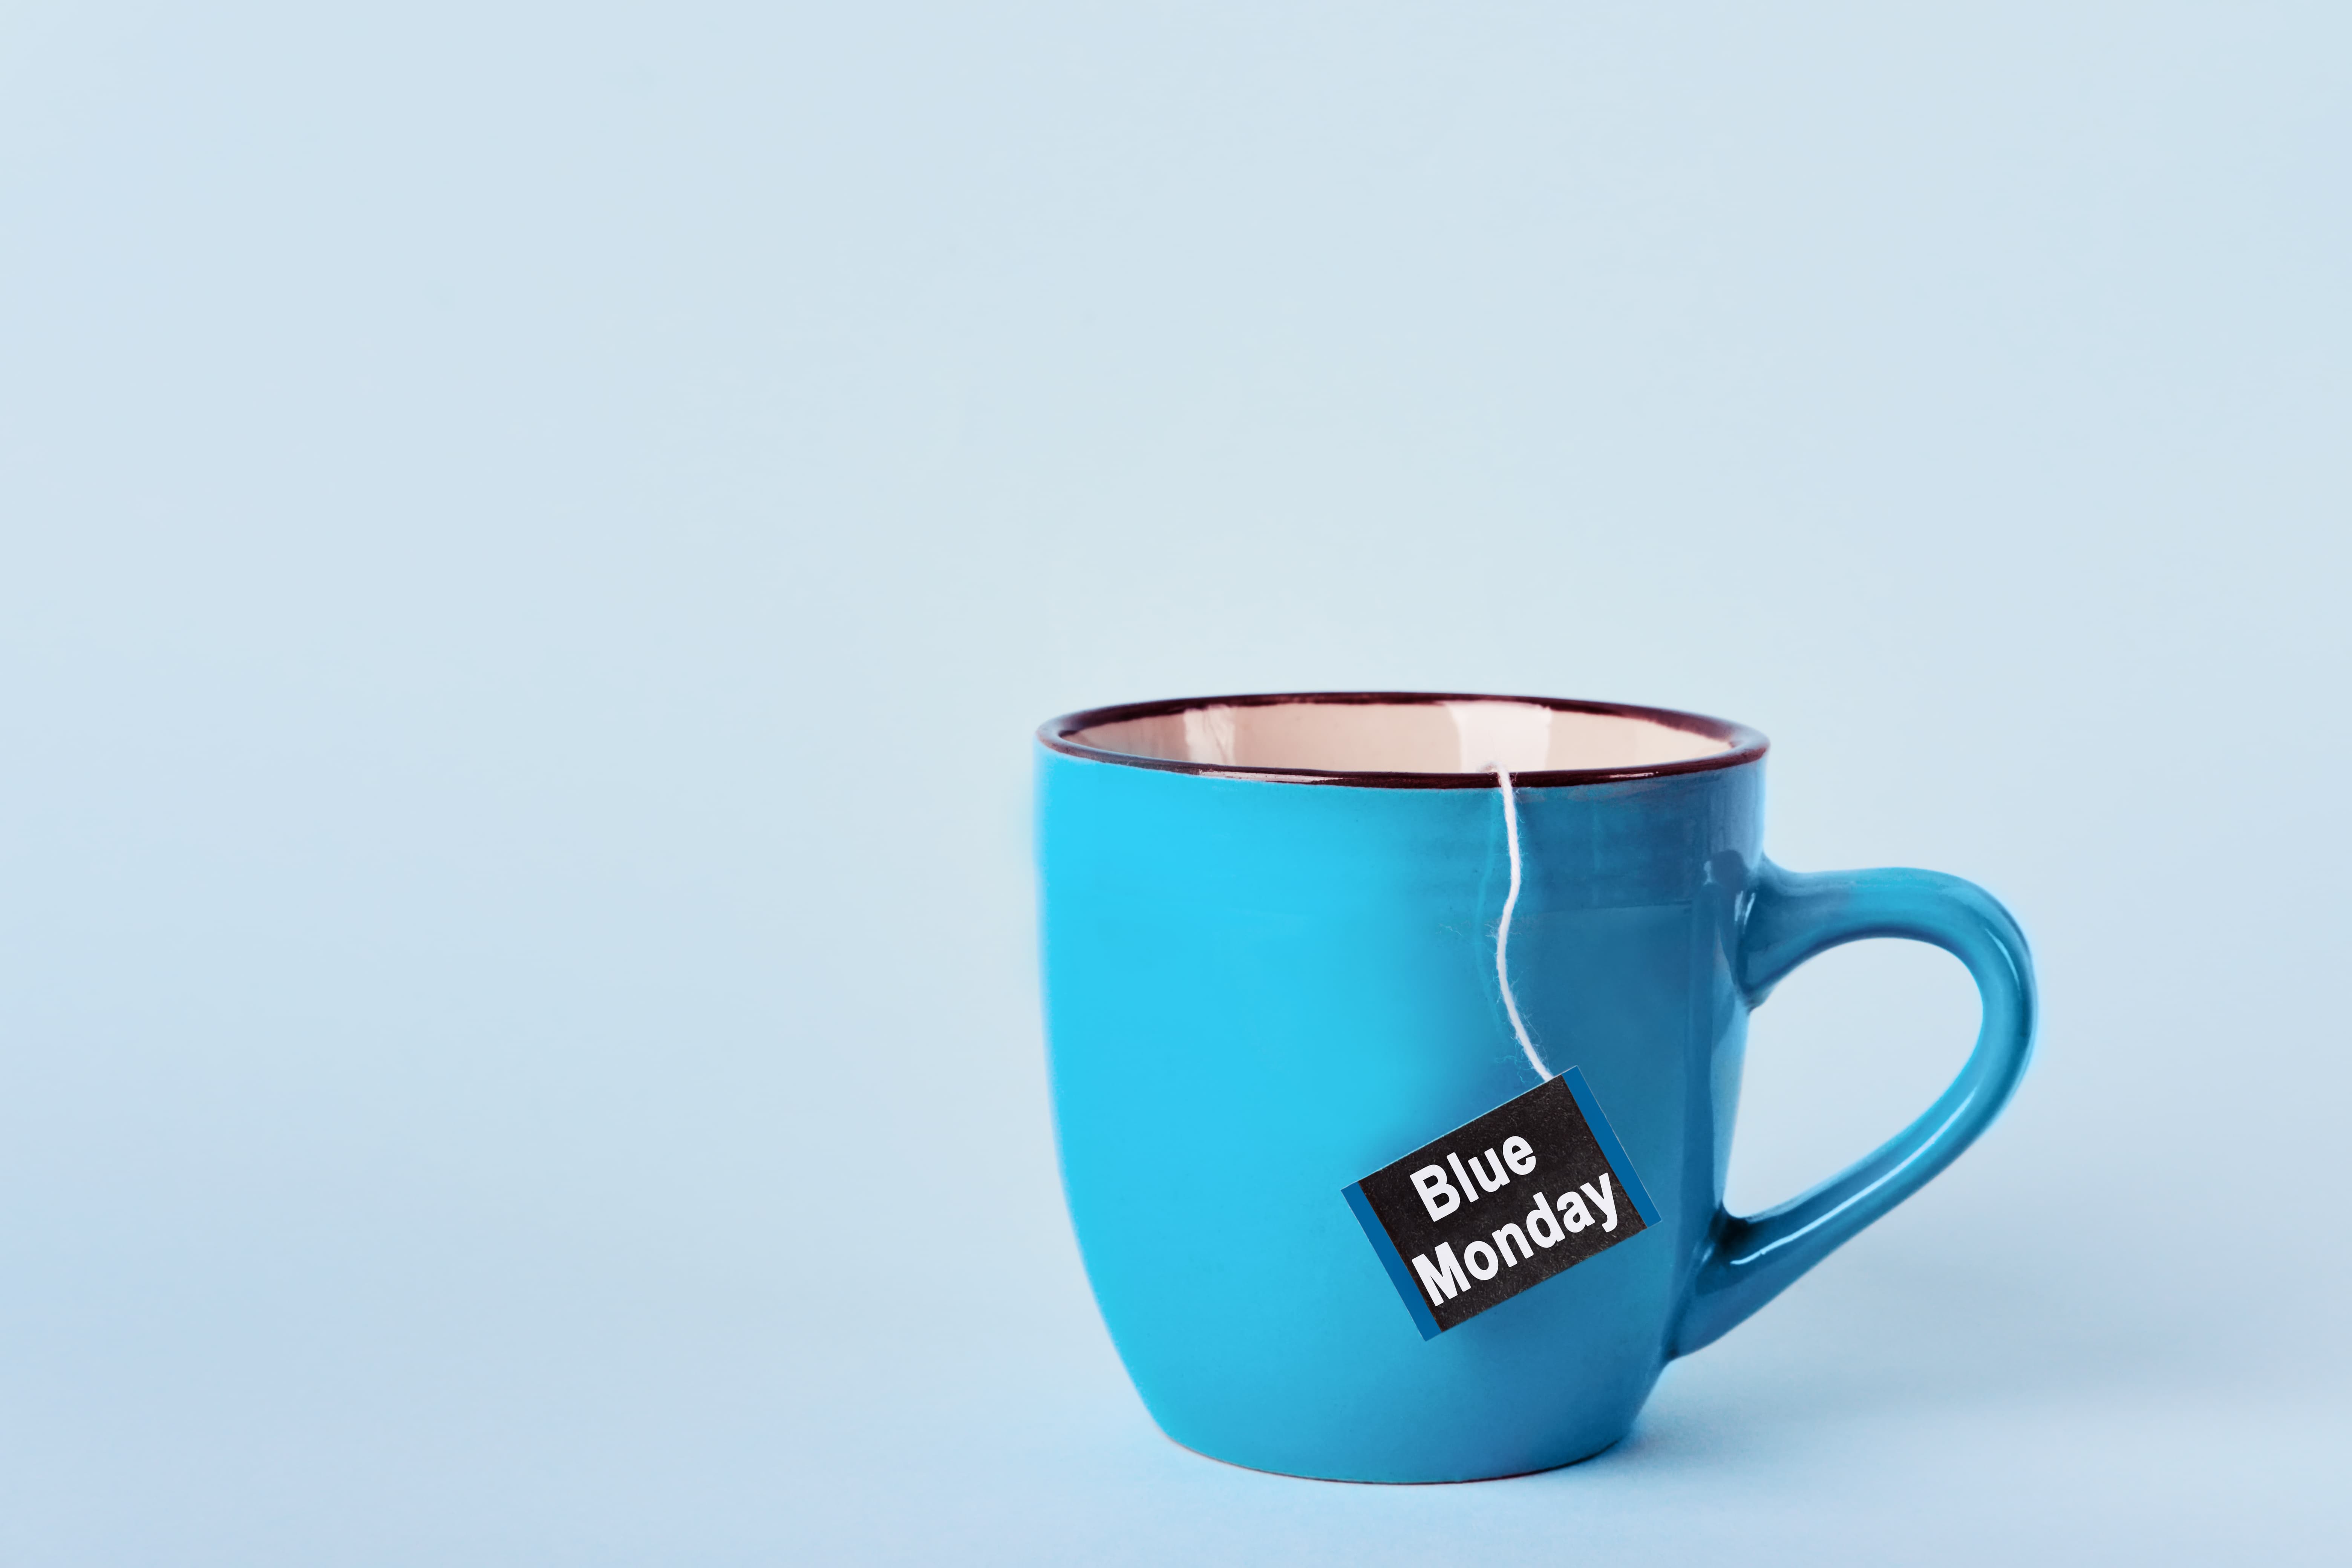 xícara azul com etiqueta de chá escrito "blue monday"